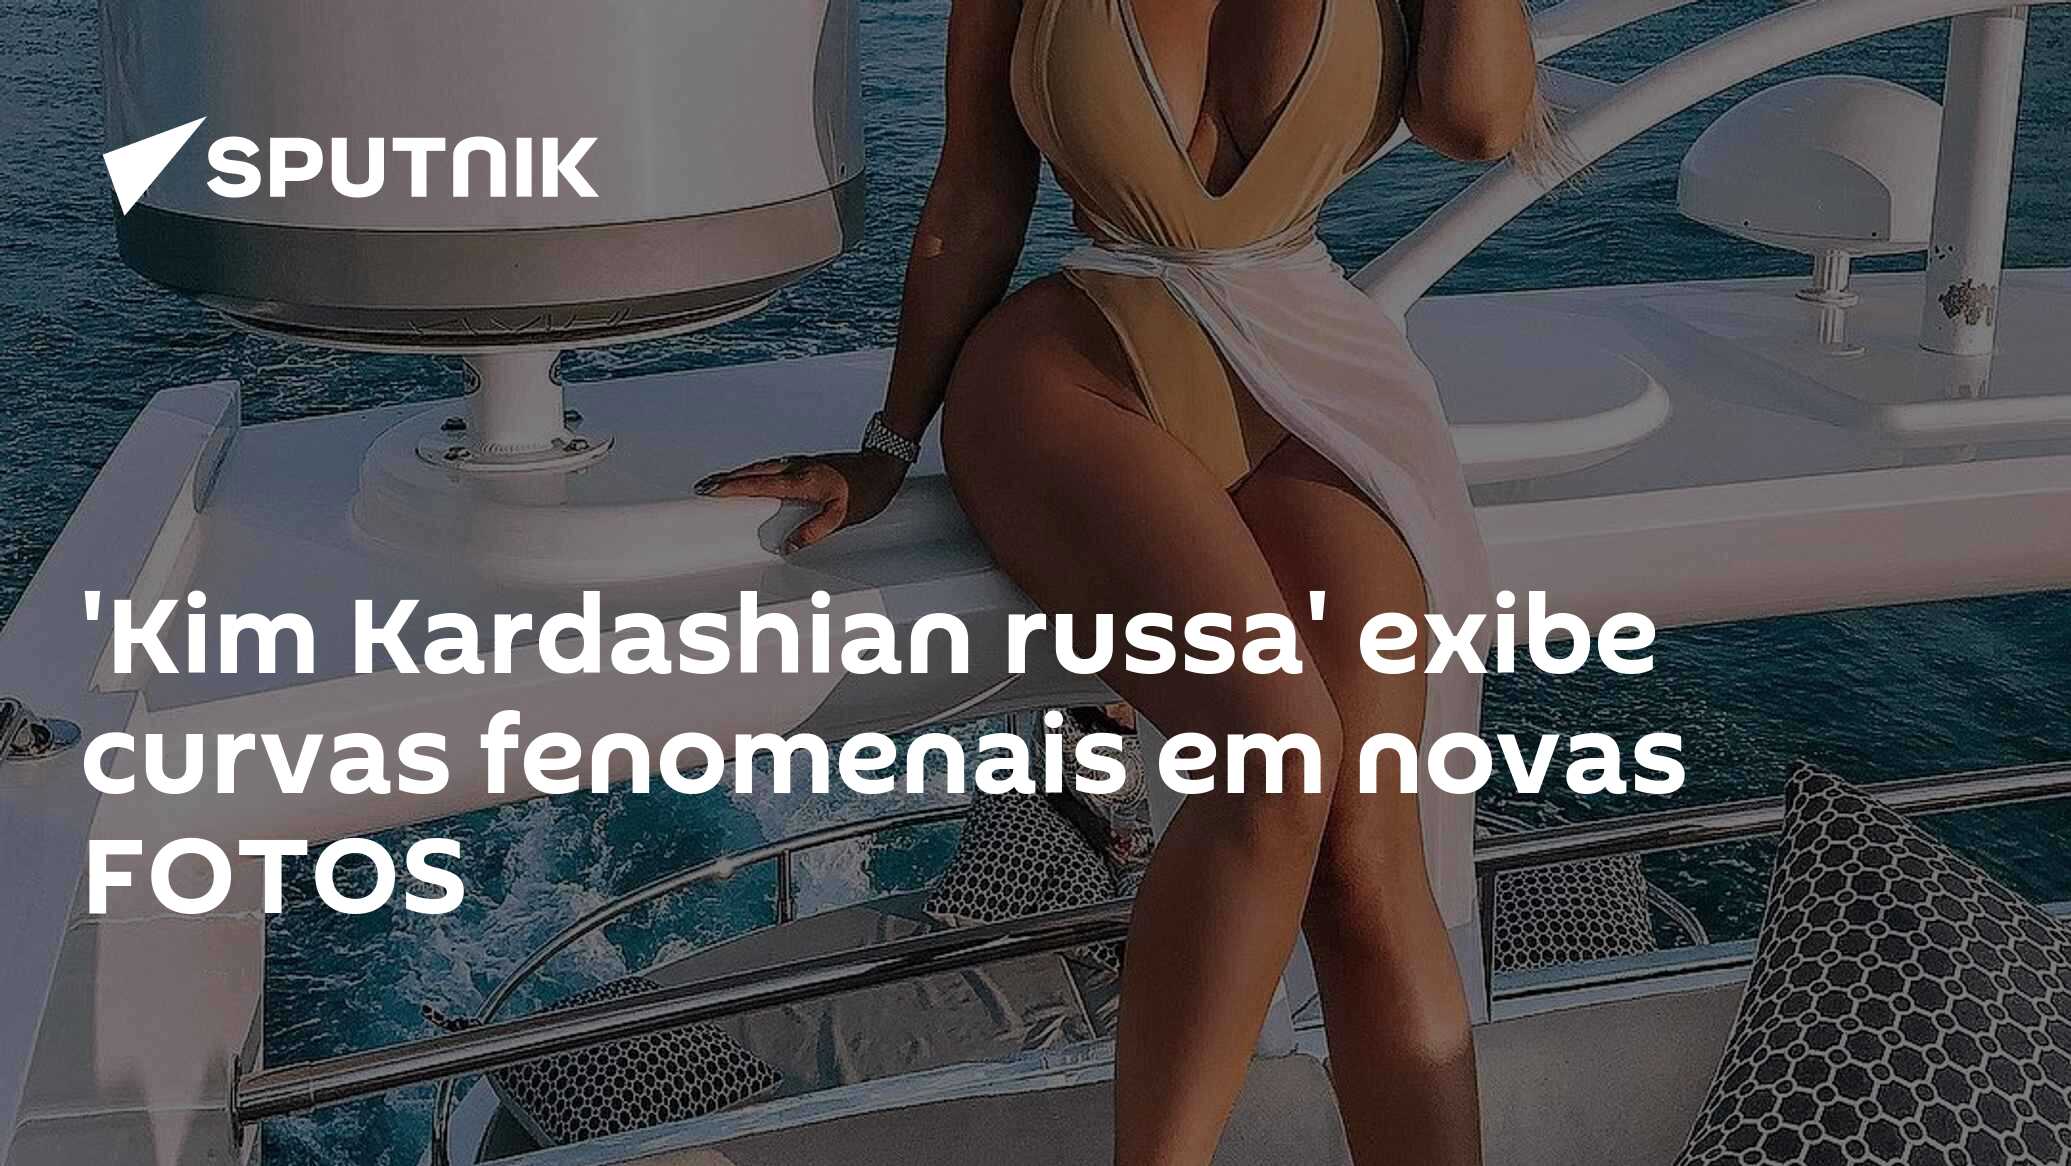 Kim Kardashian russa' exibe curvas usando biquíni e não só (Foto, Vídeos) -  29.06.2019, Sputnik Brasil